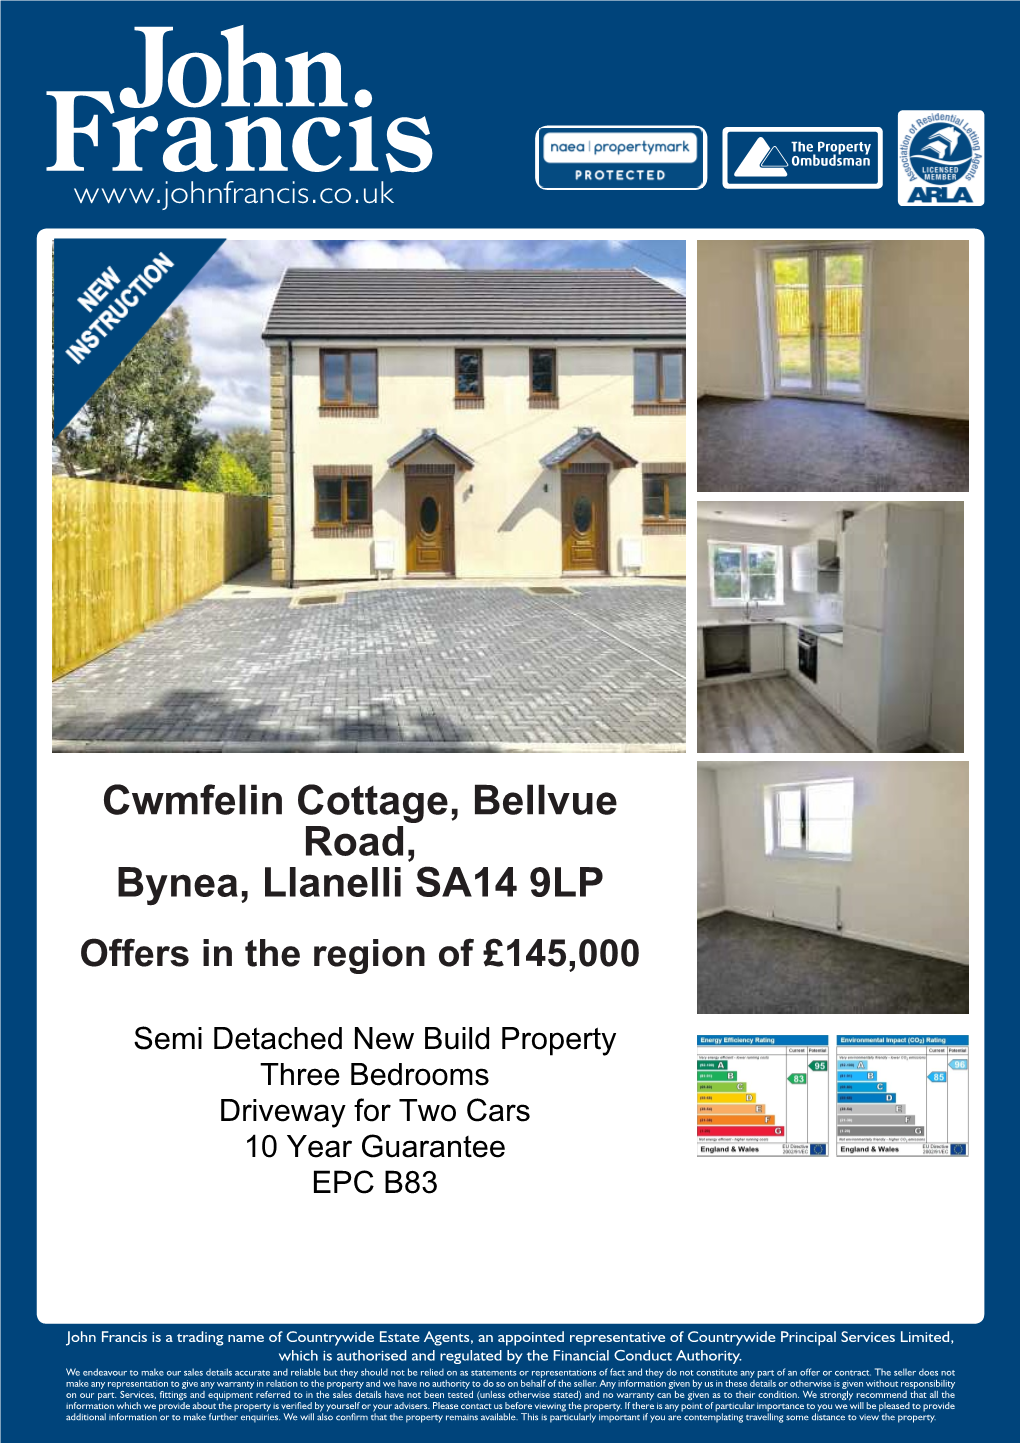 Cwmfelin Cottage, Bellvue Road, Bynea, Llanelli SA14 9LP Offers in the Region of £145,000